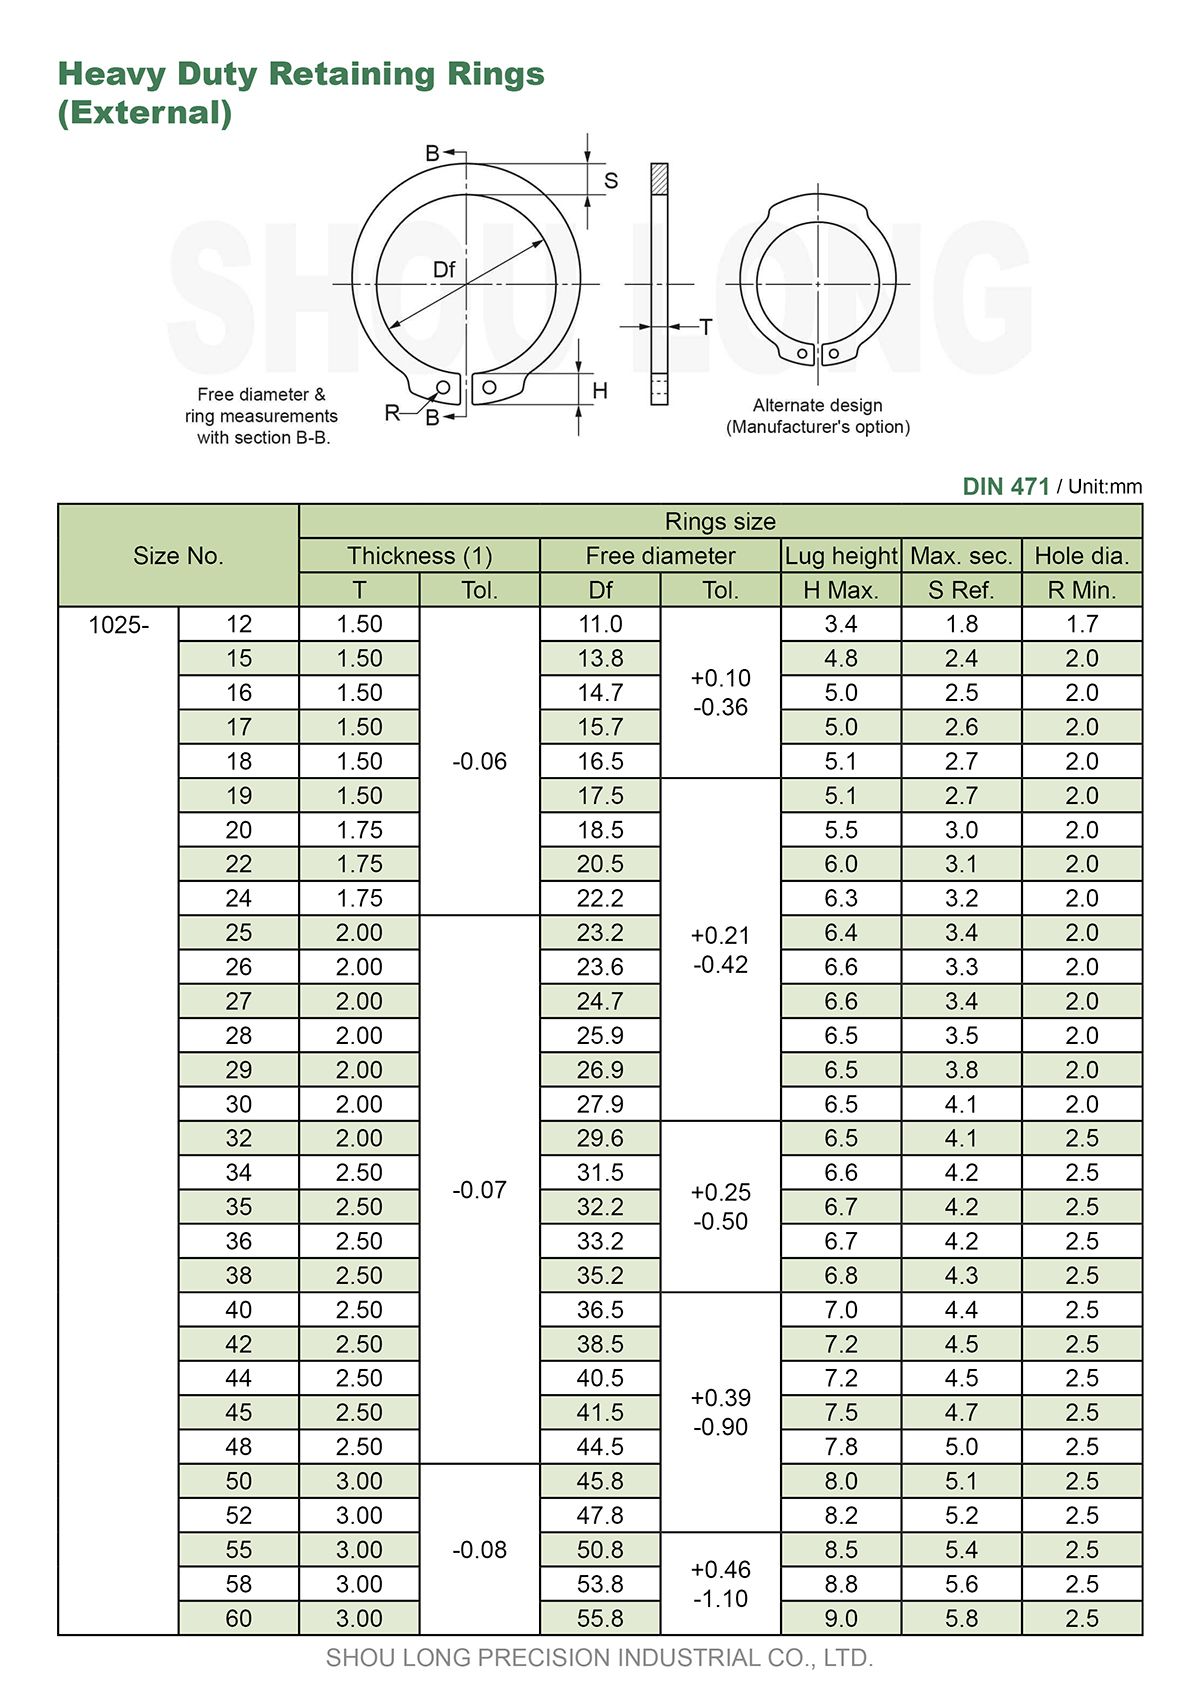 مواصفات حلقات الاحتفاظ الثقيلة المترية للعمود DIN471 - 1